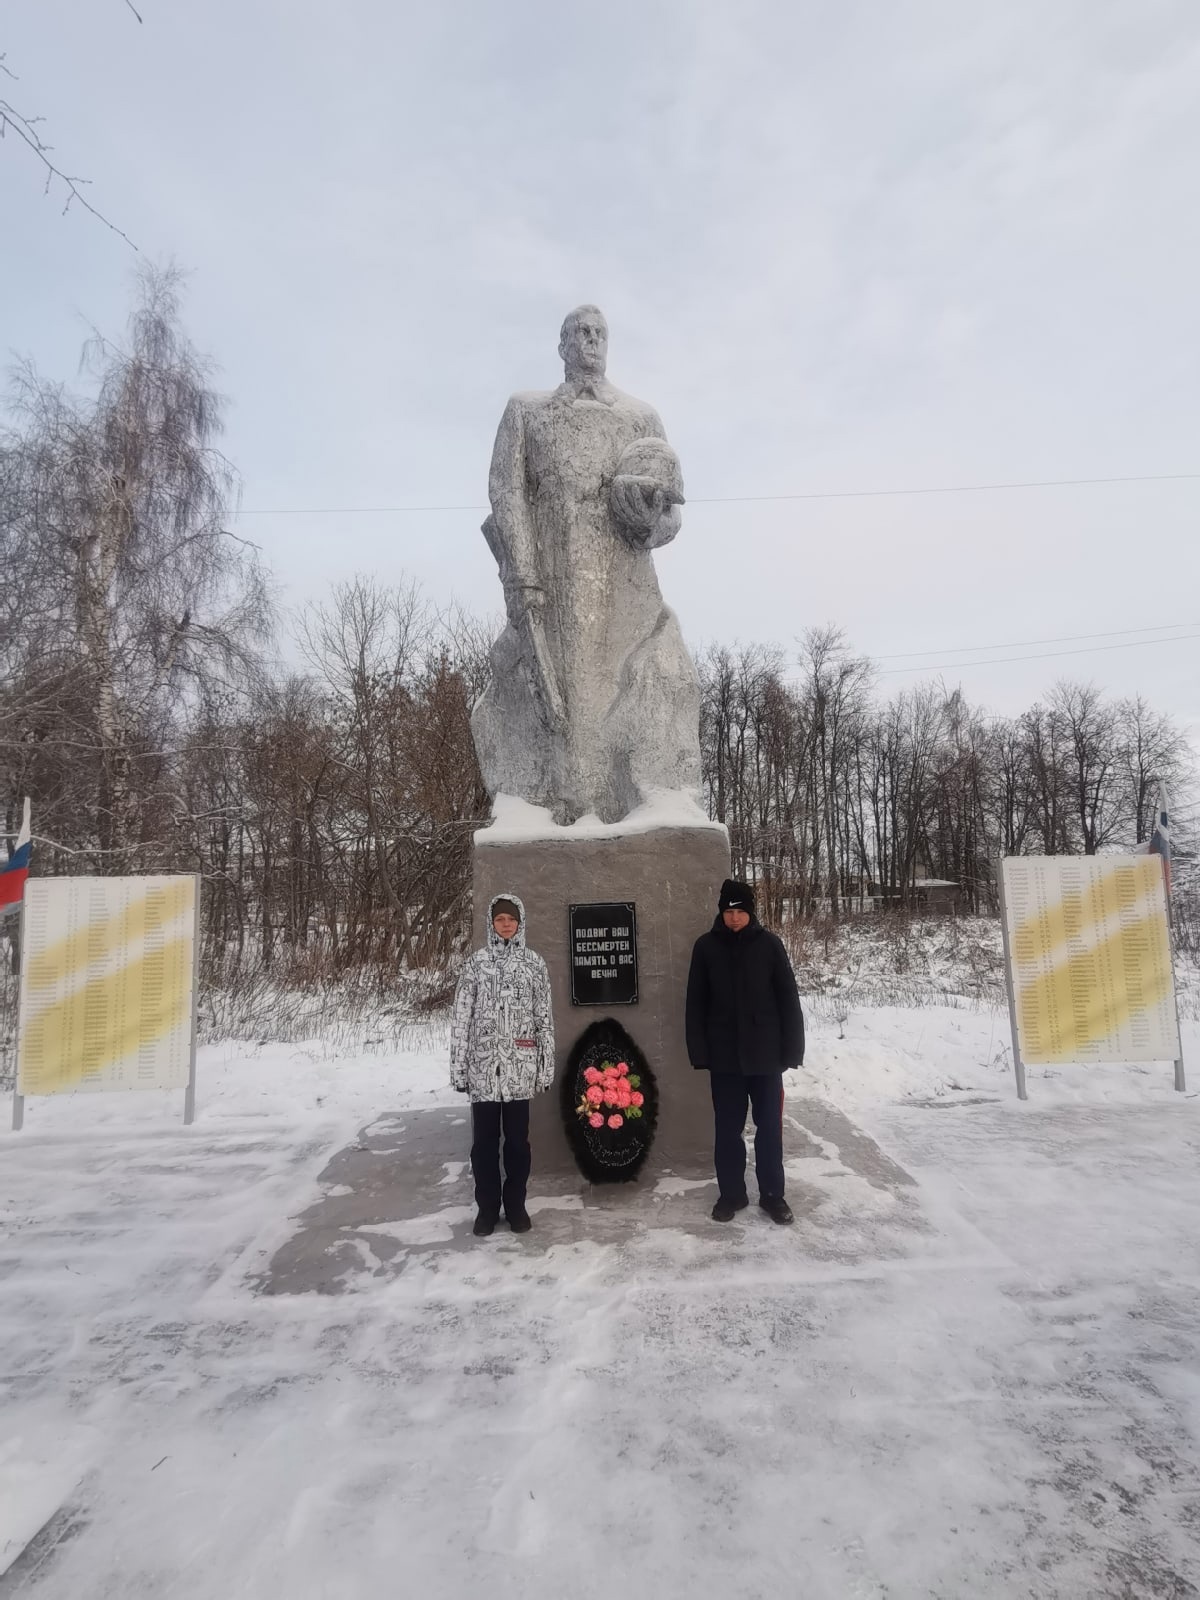 9 декабря - День Героев Отечества в России.